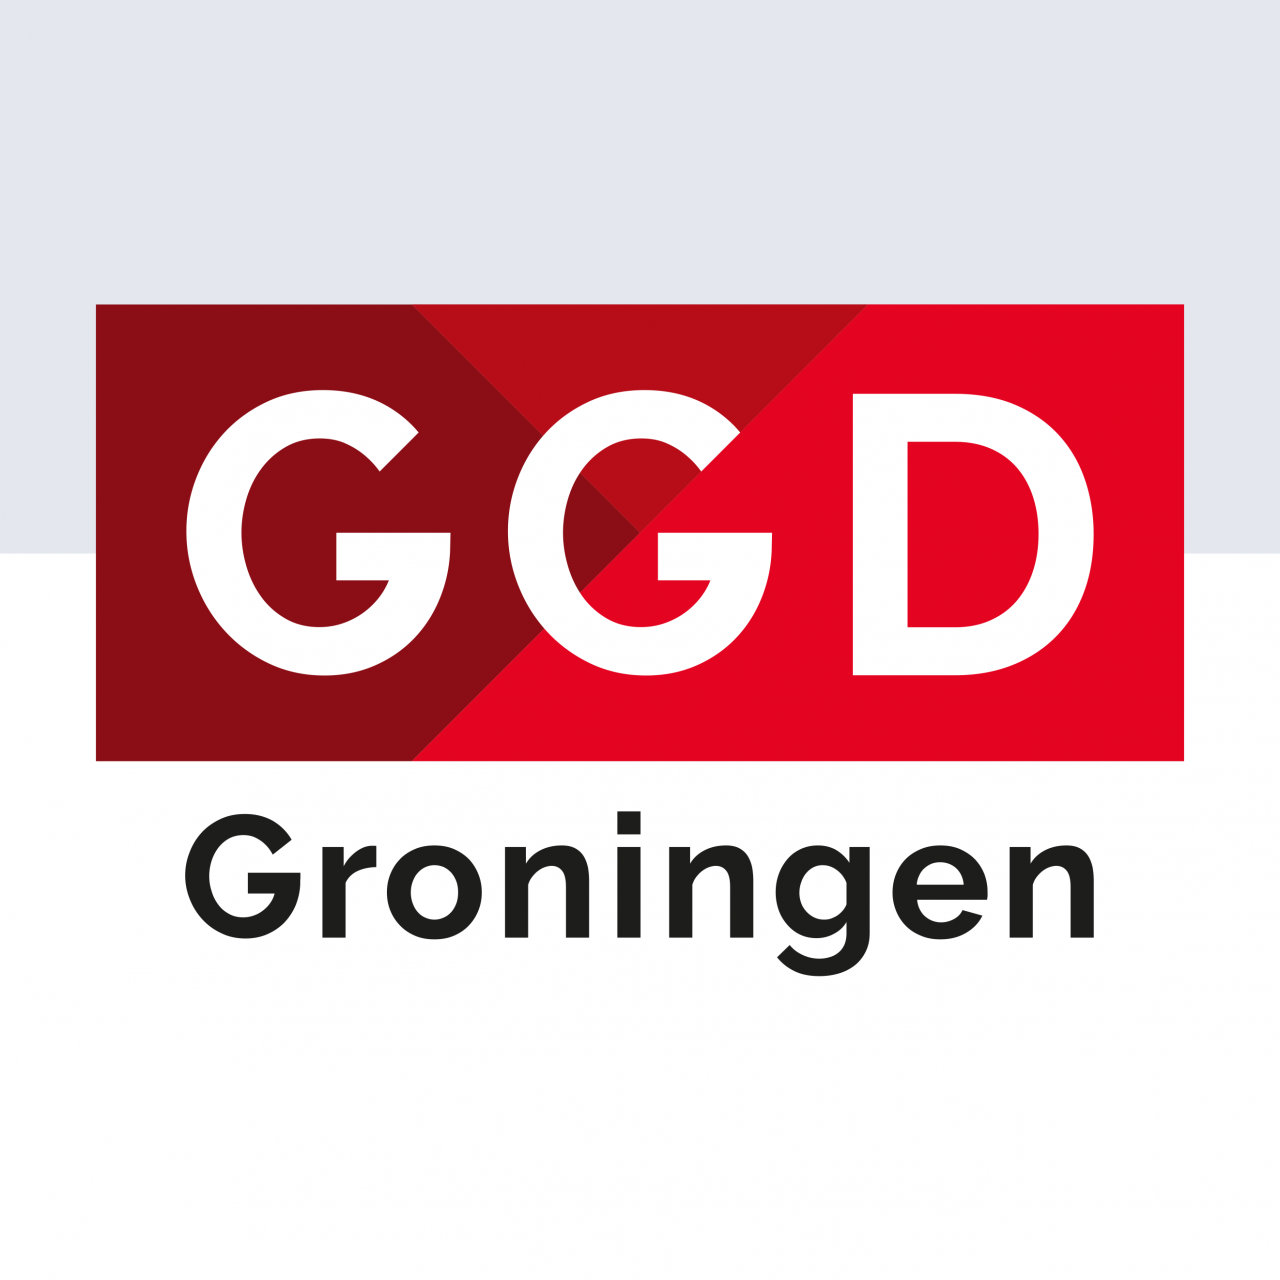 GGD Groningen logo